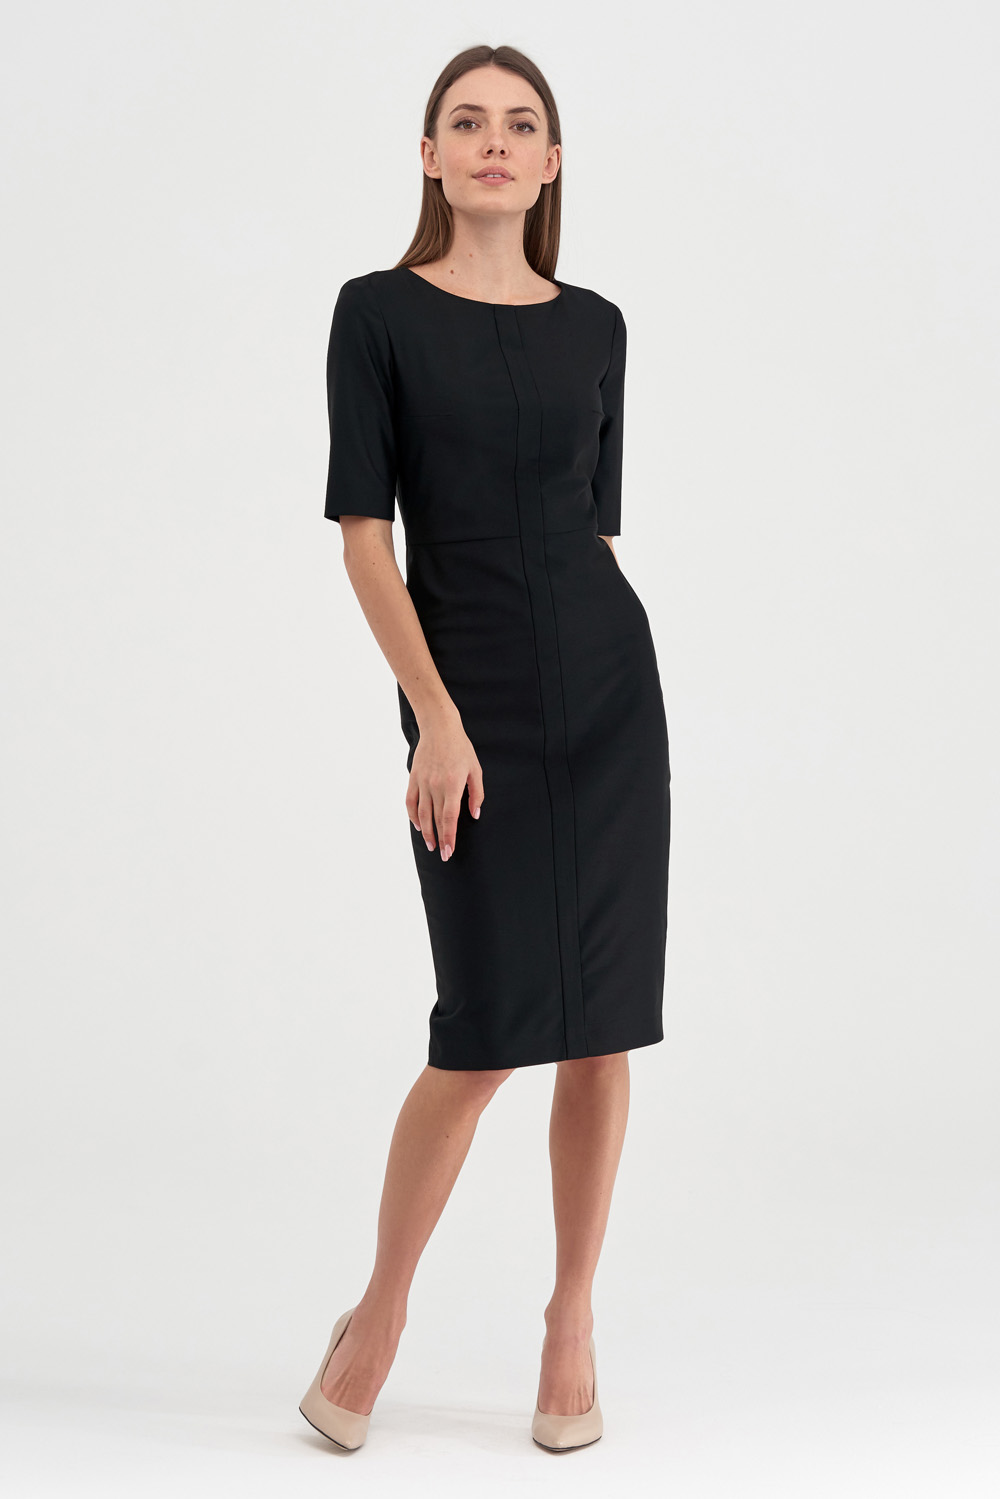 Платье-футляр черного цвета с отделкой